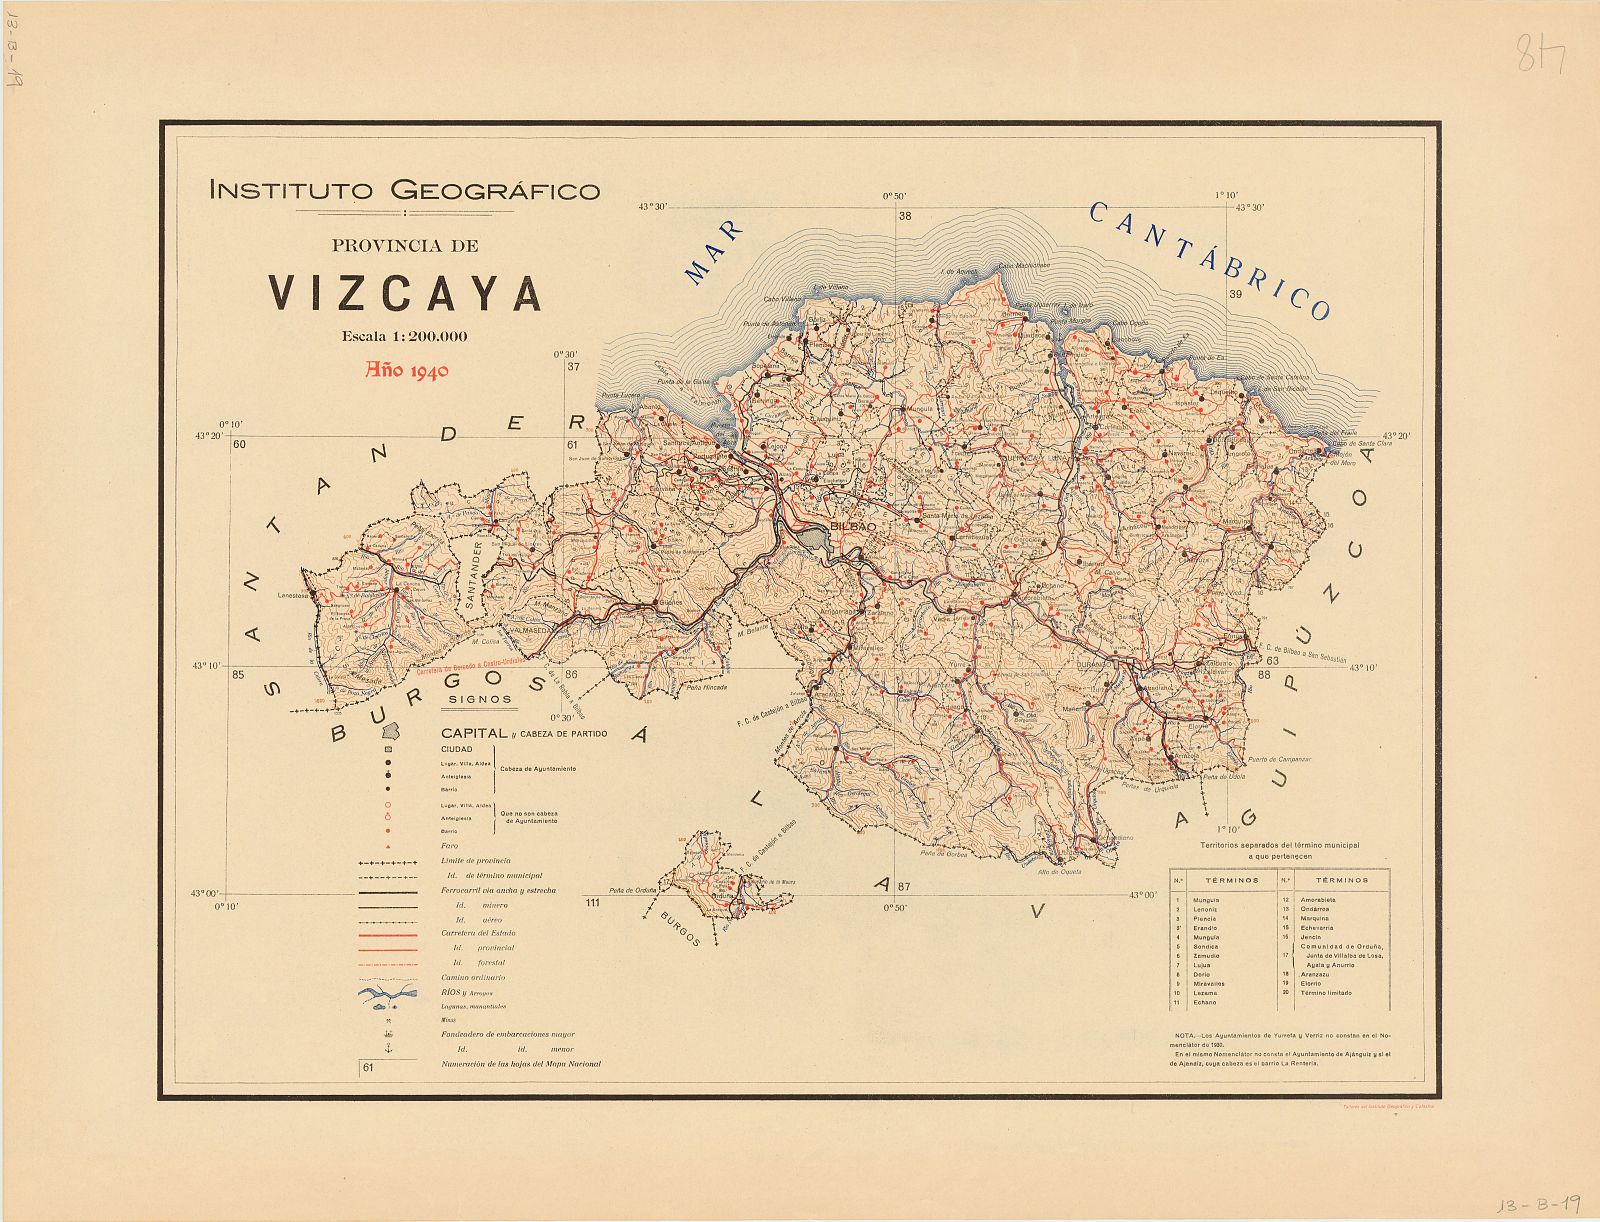 Mapa de Bilbao, en la provincia de Vizcaya, de 1940.